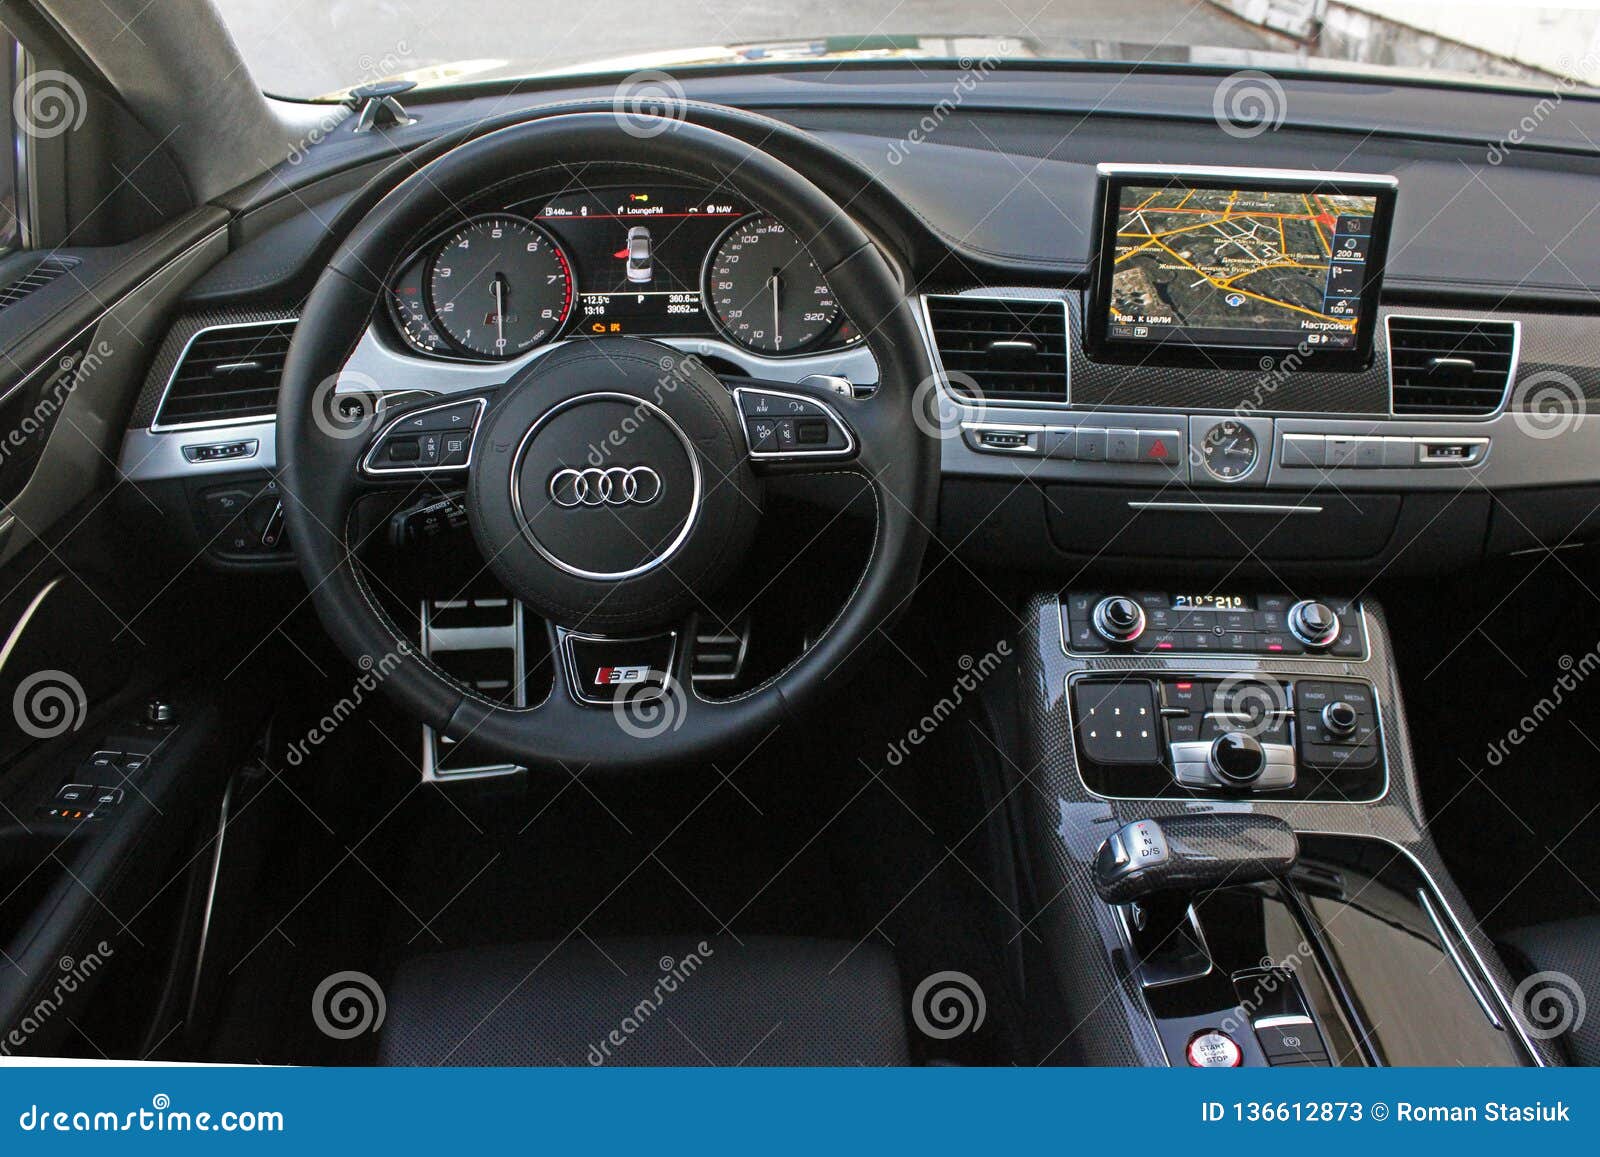 December 2 2015 Odessa Ukraine Salon Audi S8 Editorial